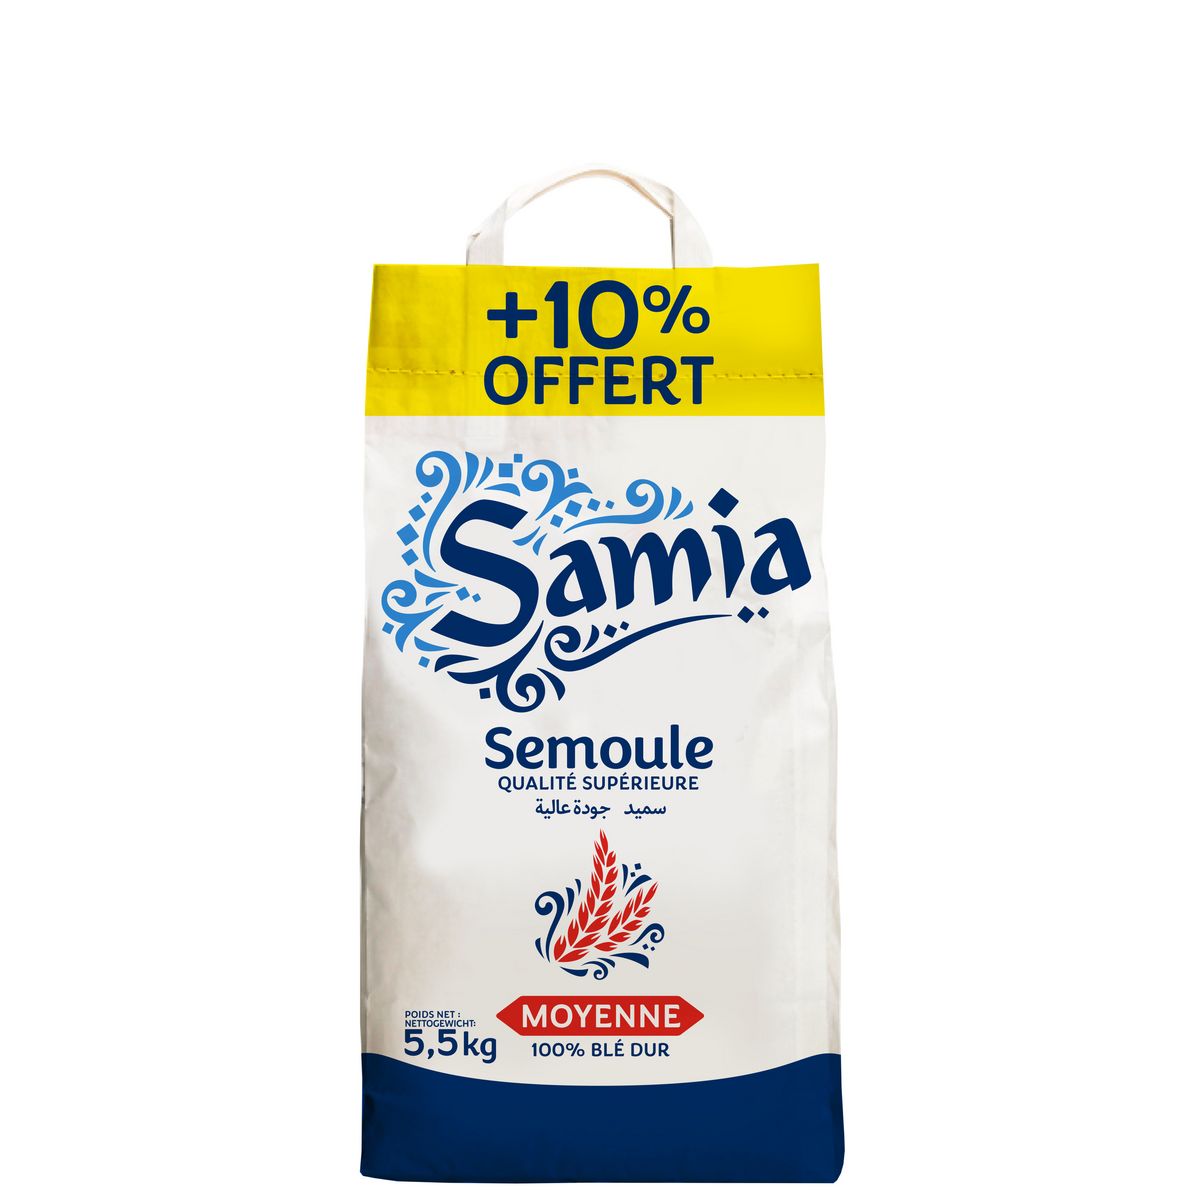 SAMIA Semoule de blé dur moyenne 5.5kg